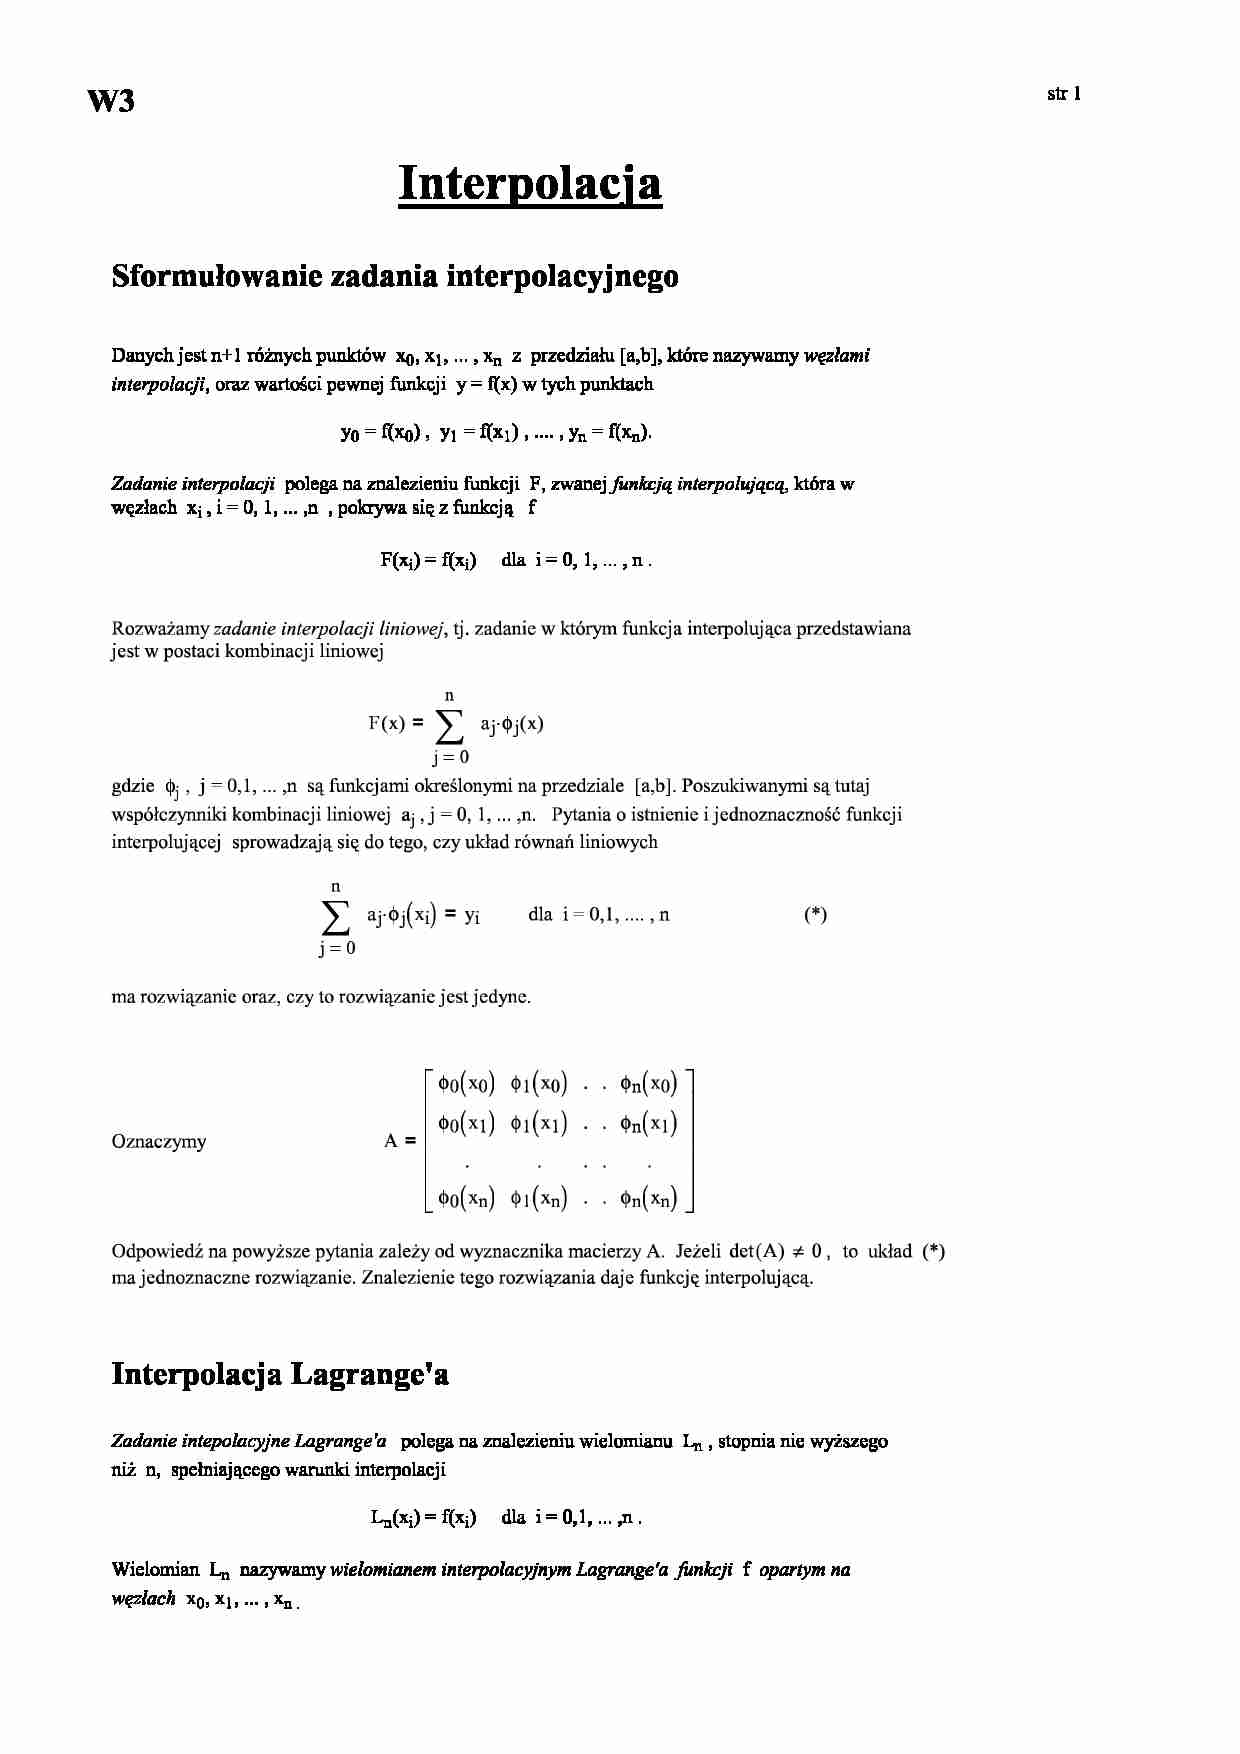 Sformułowanie zadania interpolacyjnego - strona 1